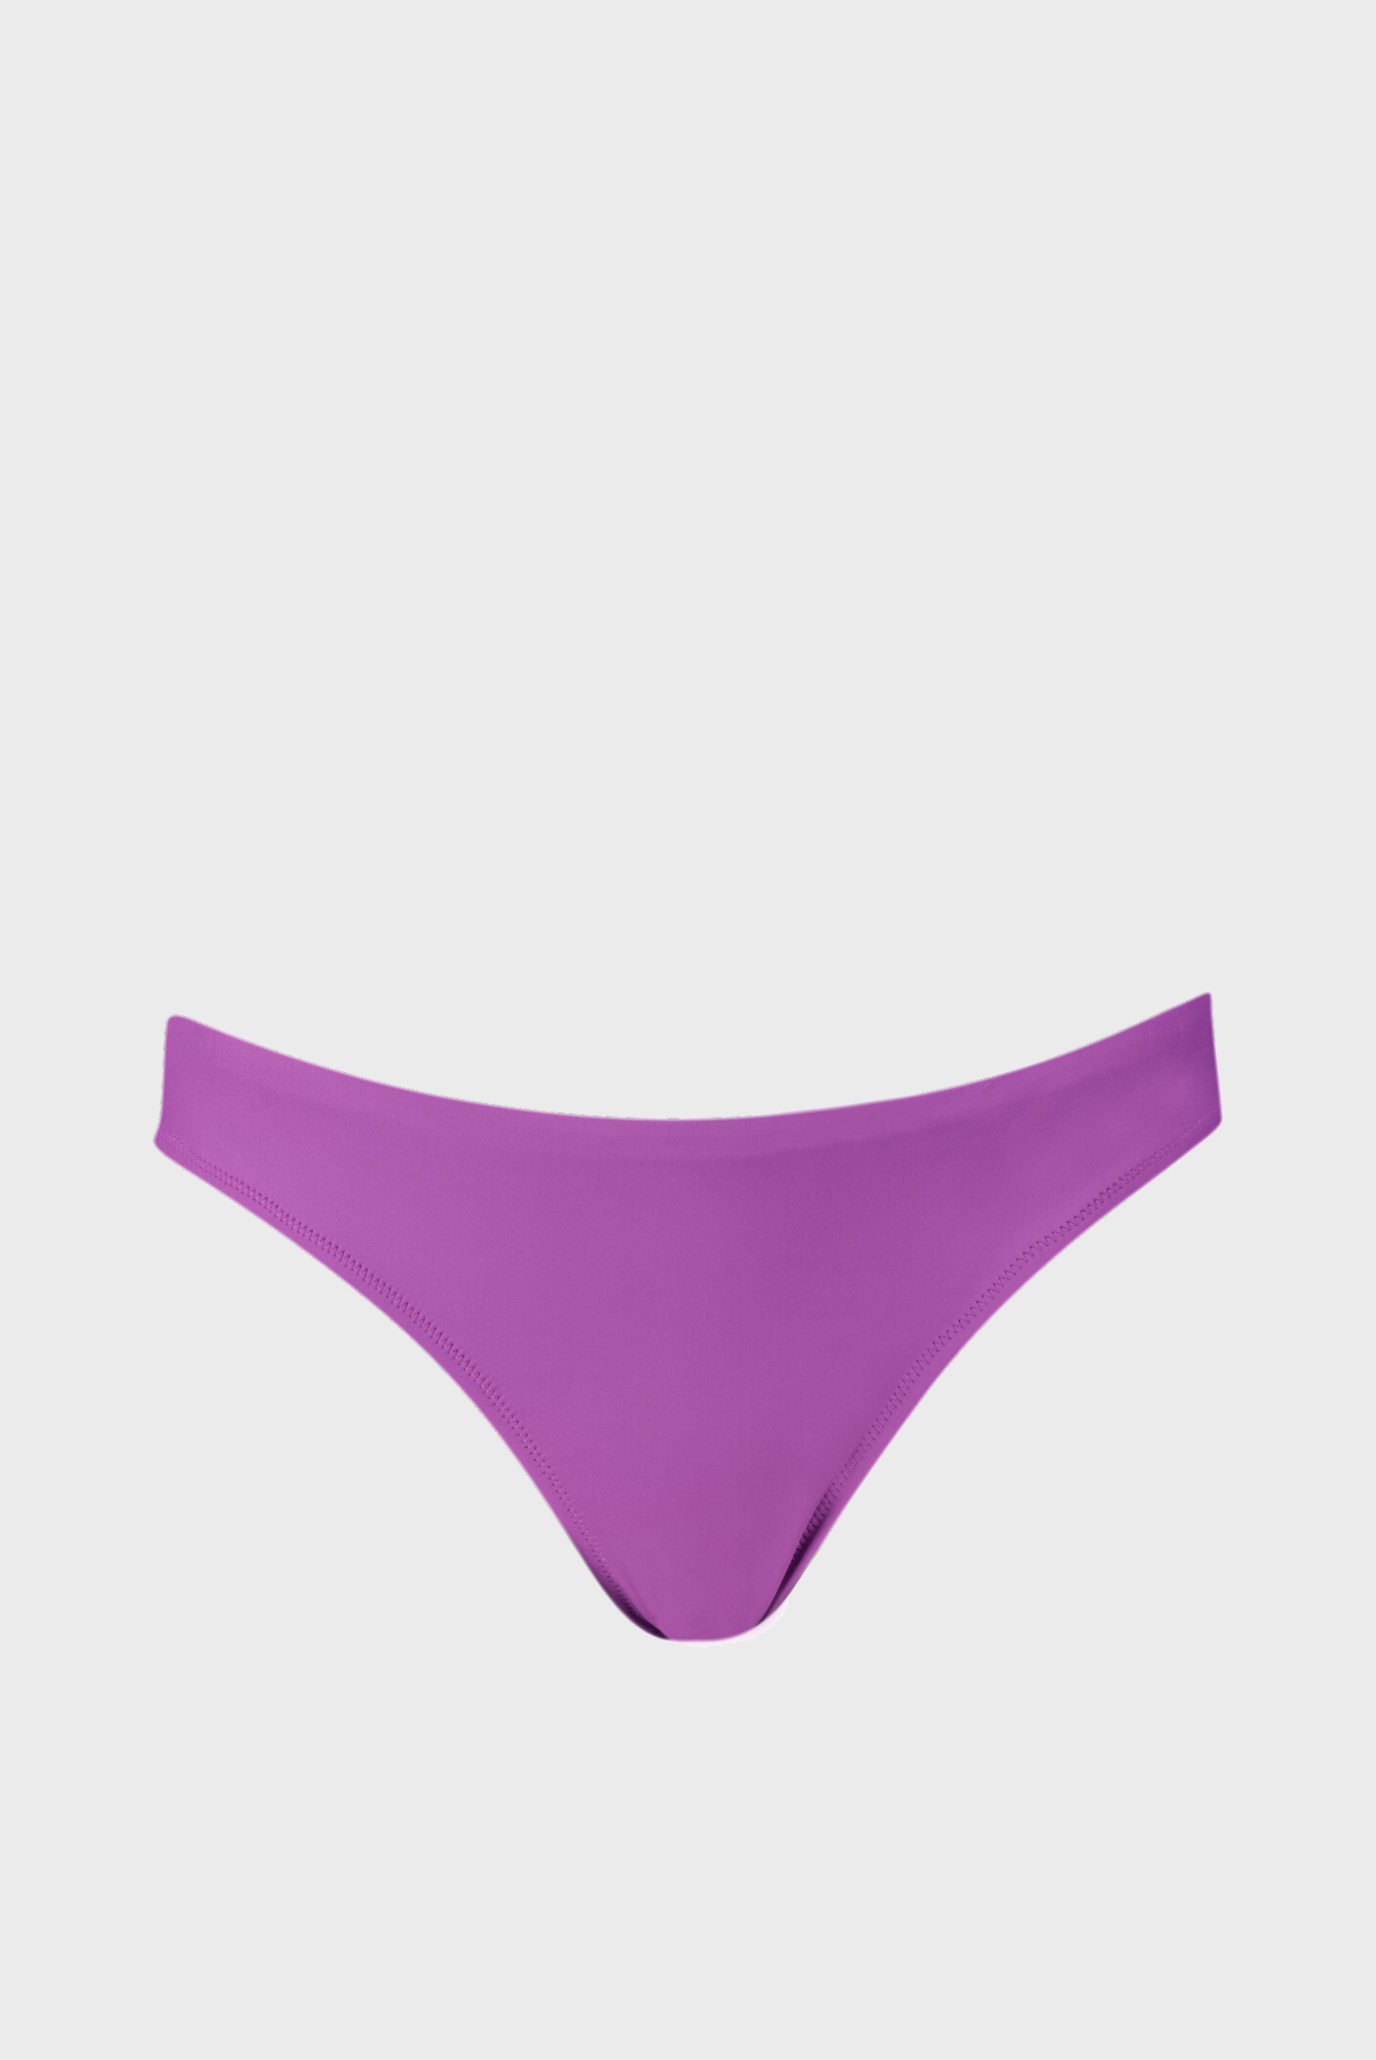 Женские фиолетовые трусики от купальника PUMA Women's Brazilian Swim Bottoms 1